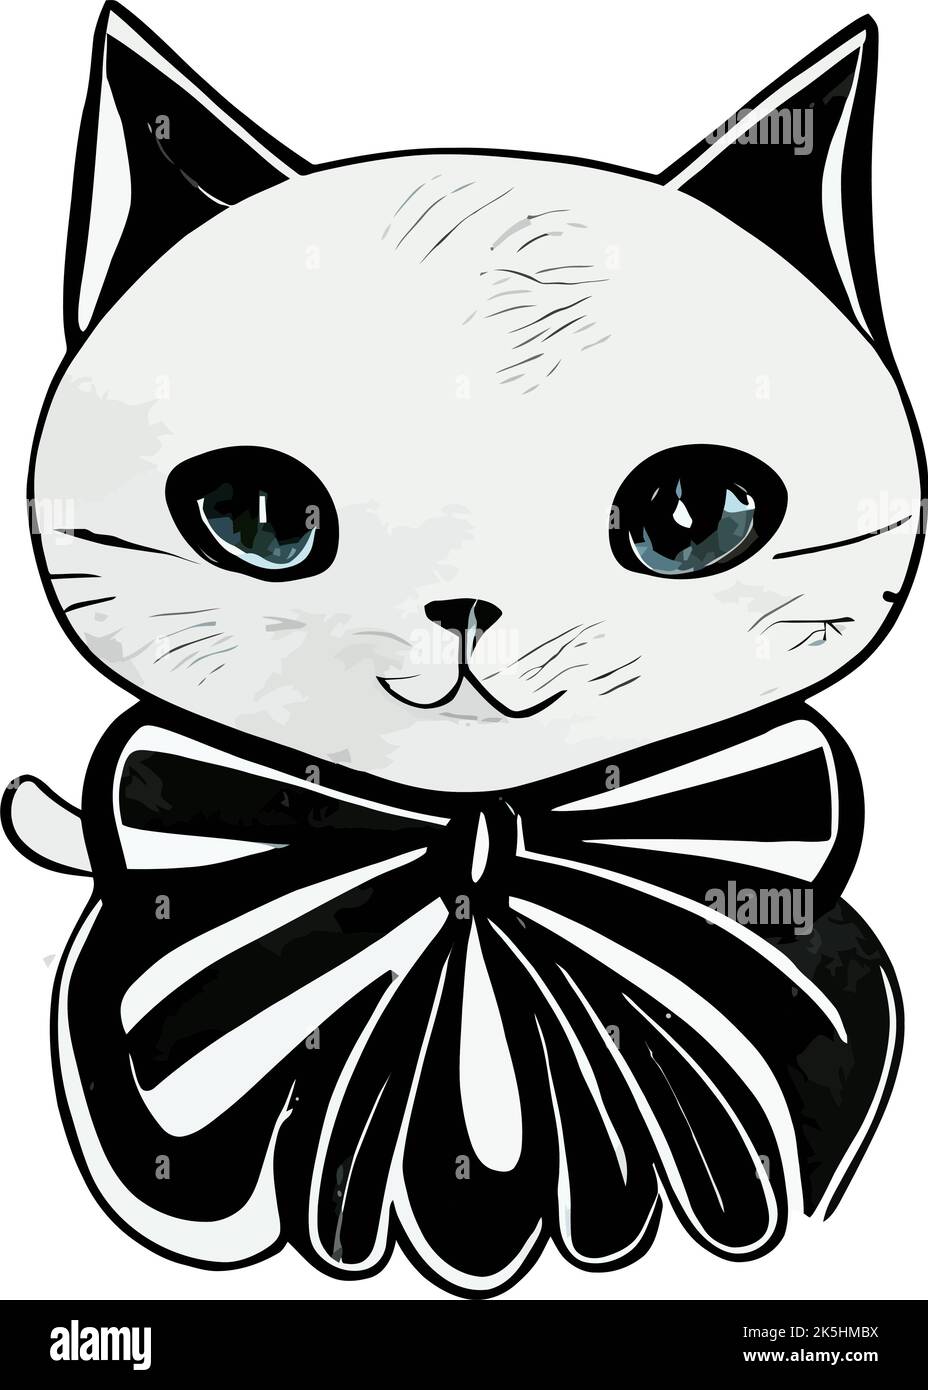 Dessin noir d'un chat avec une jolie face isolée sur un fond Uni Illustration de Vecteur